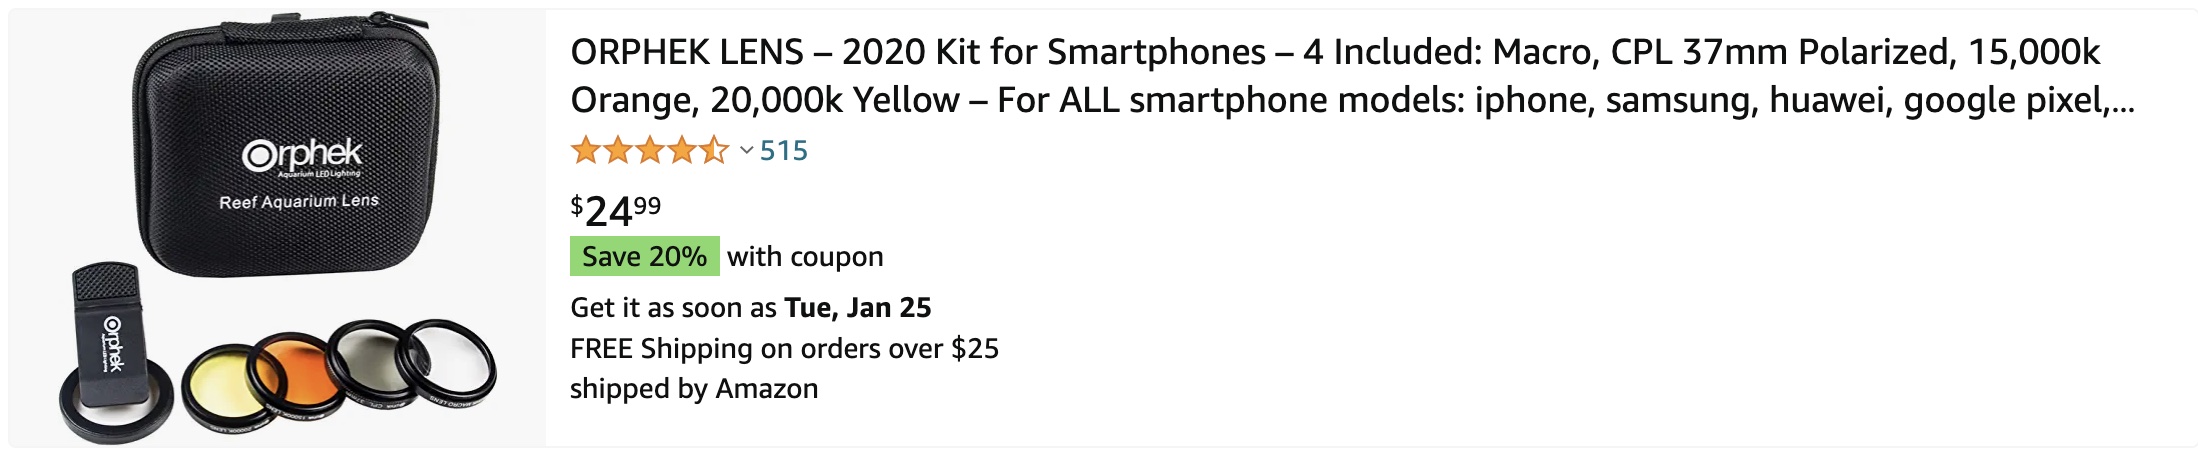 acheter sur amazon ORPHEK LENS – Kit 2020 pour Smartphones